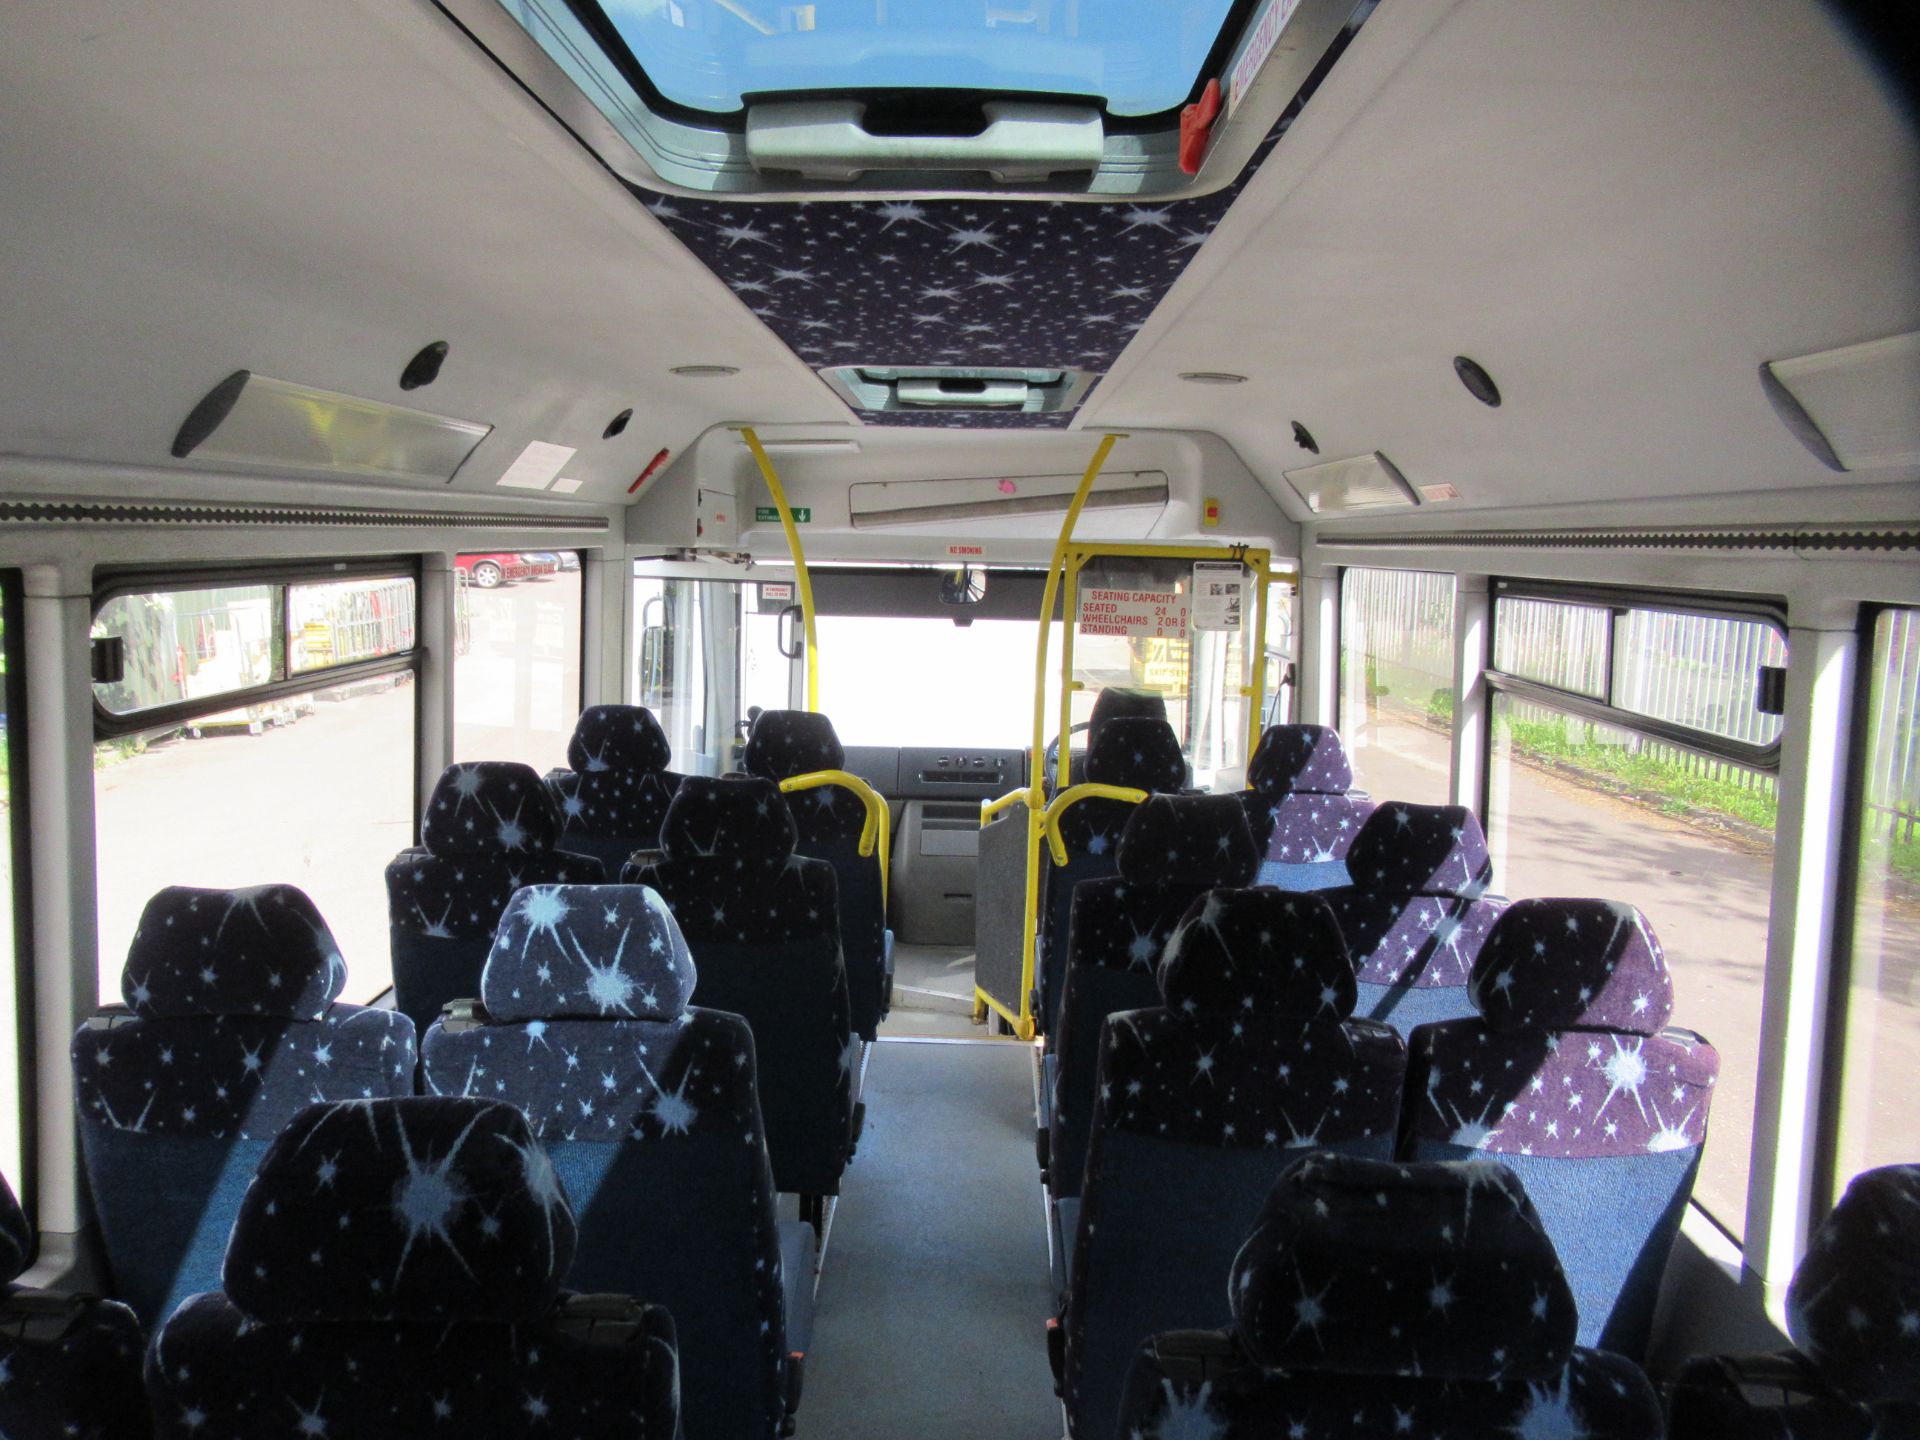 Mercedes 0813 Bluetec 4 Bus Coach - Image 19 of 23